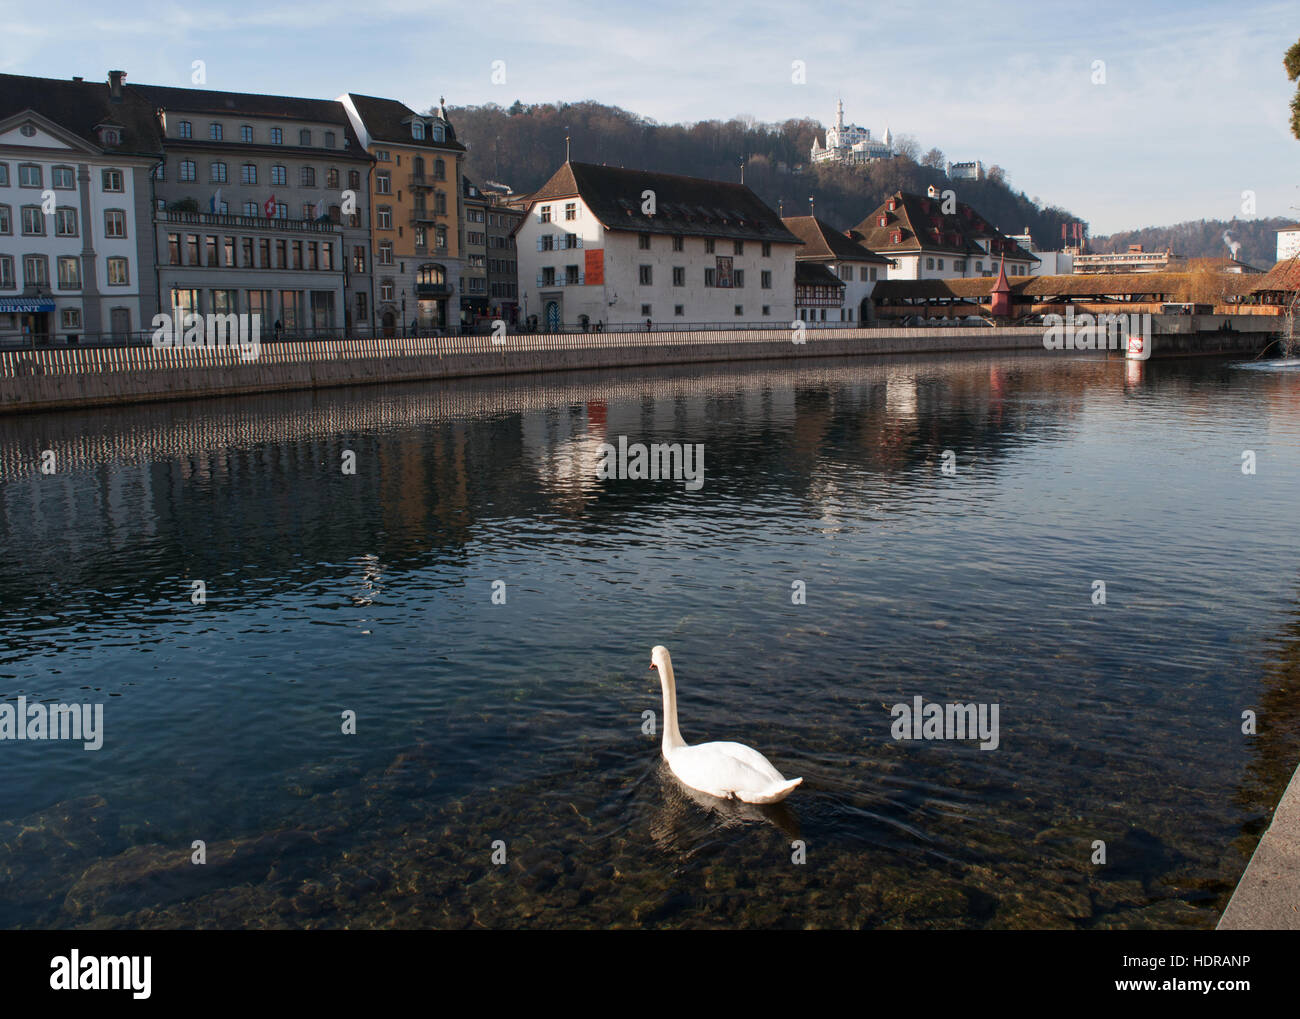 La Suisse, l'Europe : un cygne dans la rivière Reuss et le skyline de Lucerne, la ville médiévale célèbre pour ses ponts de bois couverts Banque D'Images